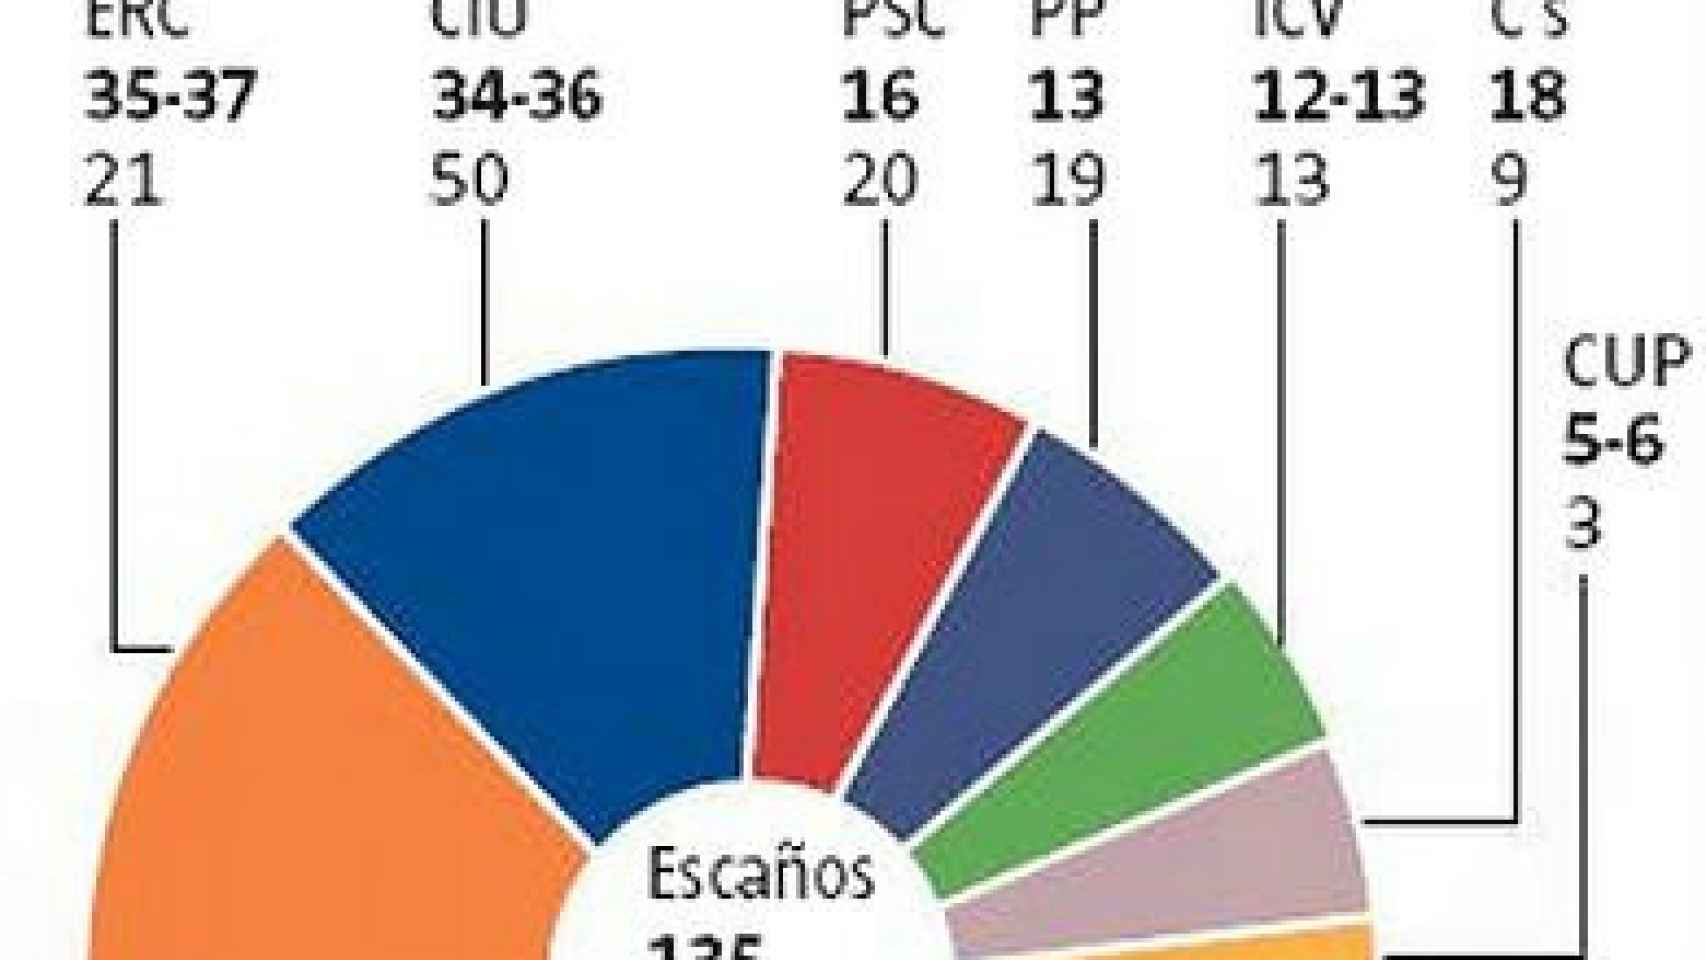 Estimación de escaños para el Parlamento autonómico de Cataluña -y su comparación con la representación actual- según un sondeo realizado por Feedback,